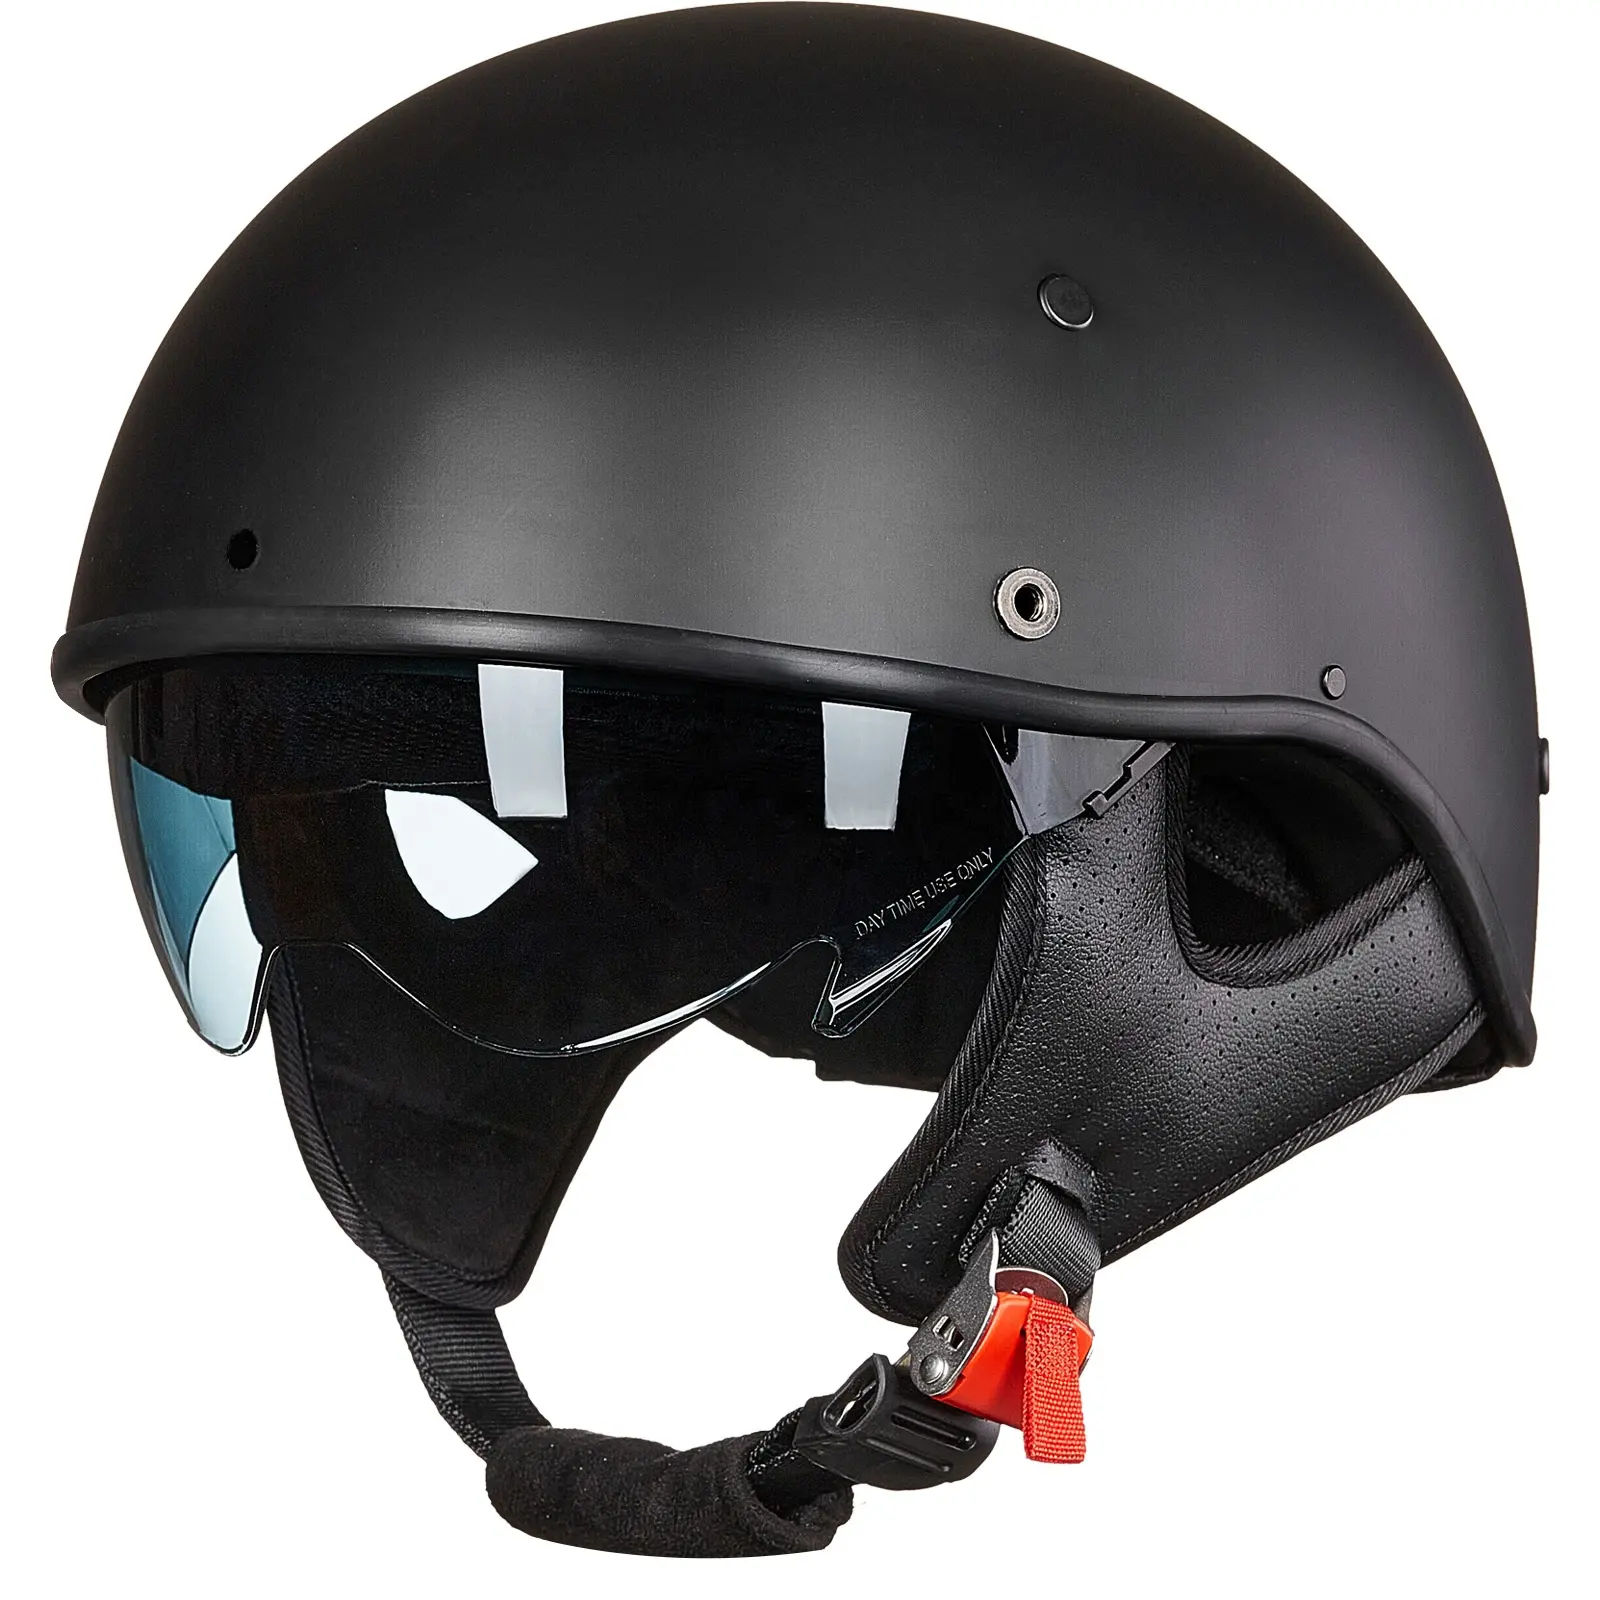 ILM Fiberglass Half Helmet Motorcycle Men Women Adult Open Face Motorcycle Helmes with Sun Visor DOT 731